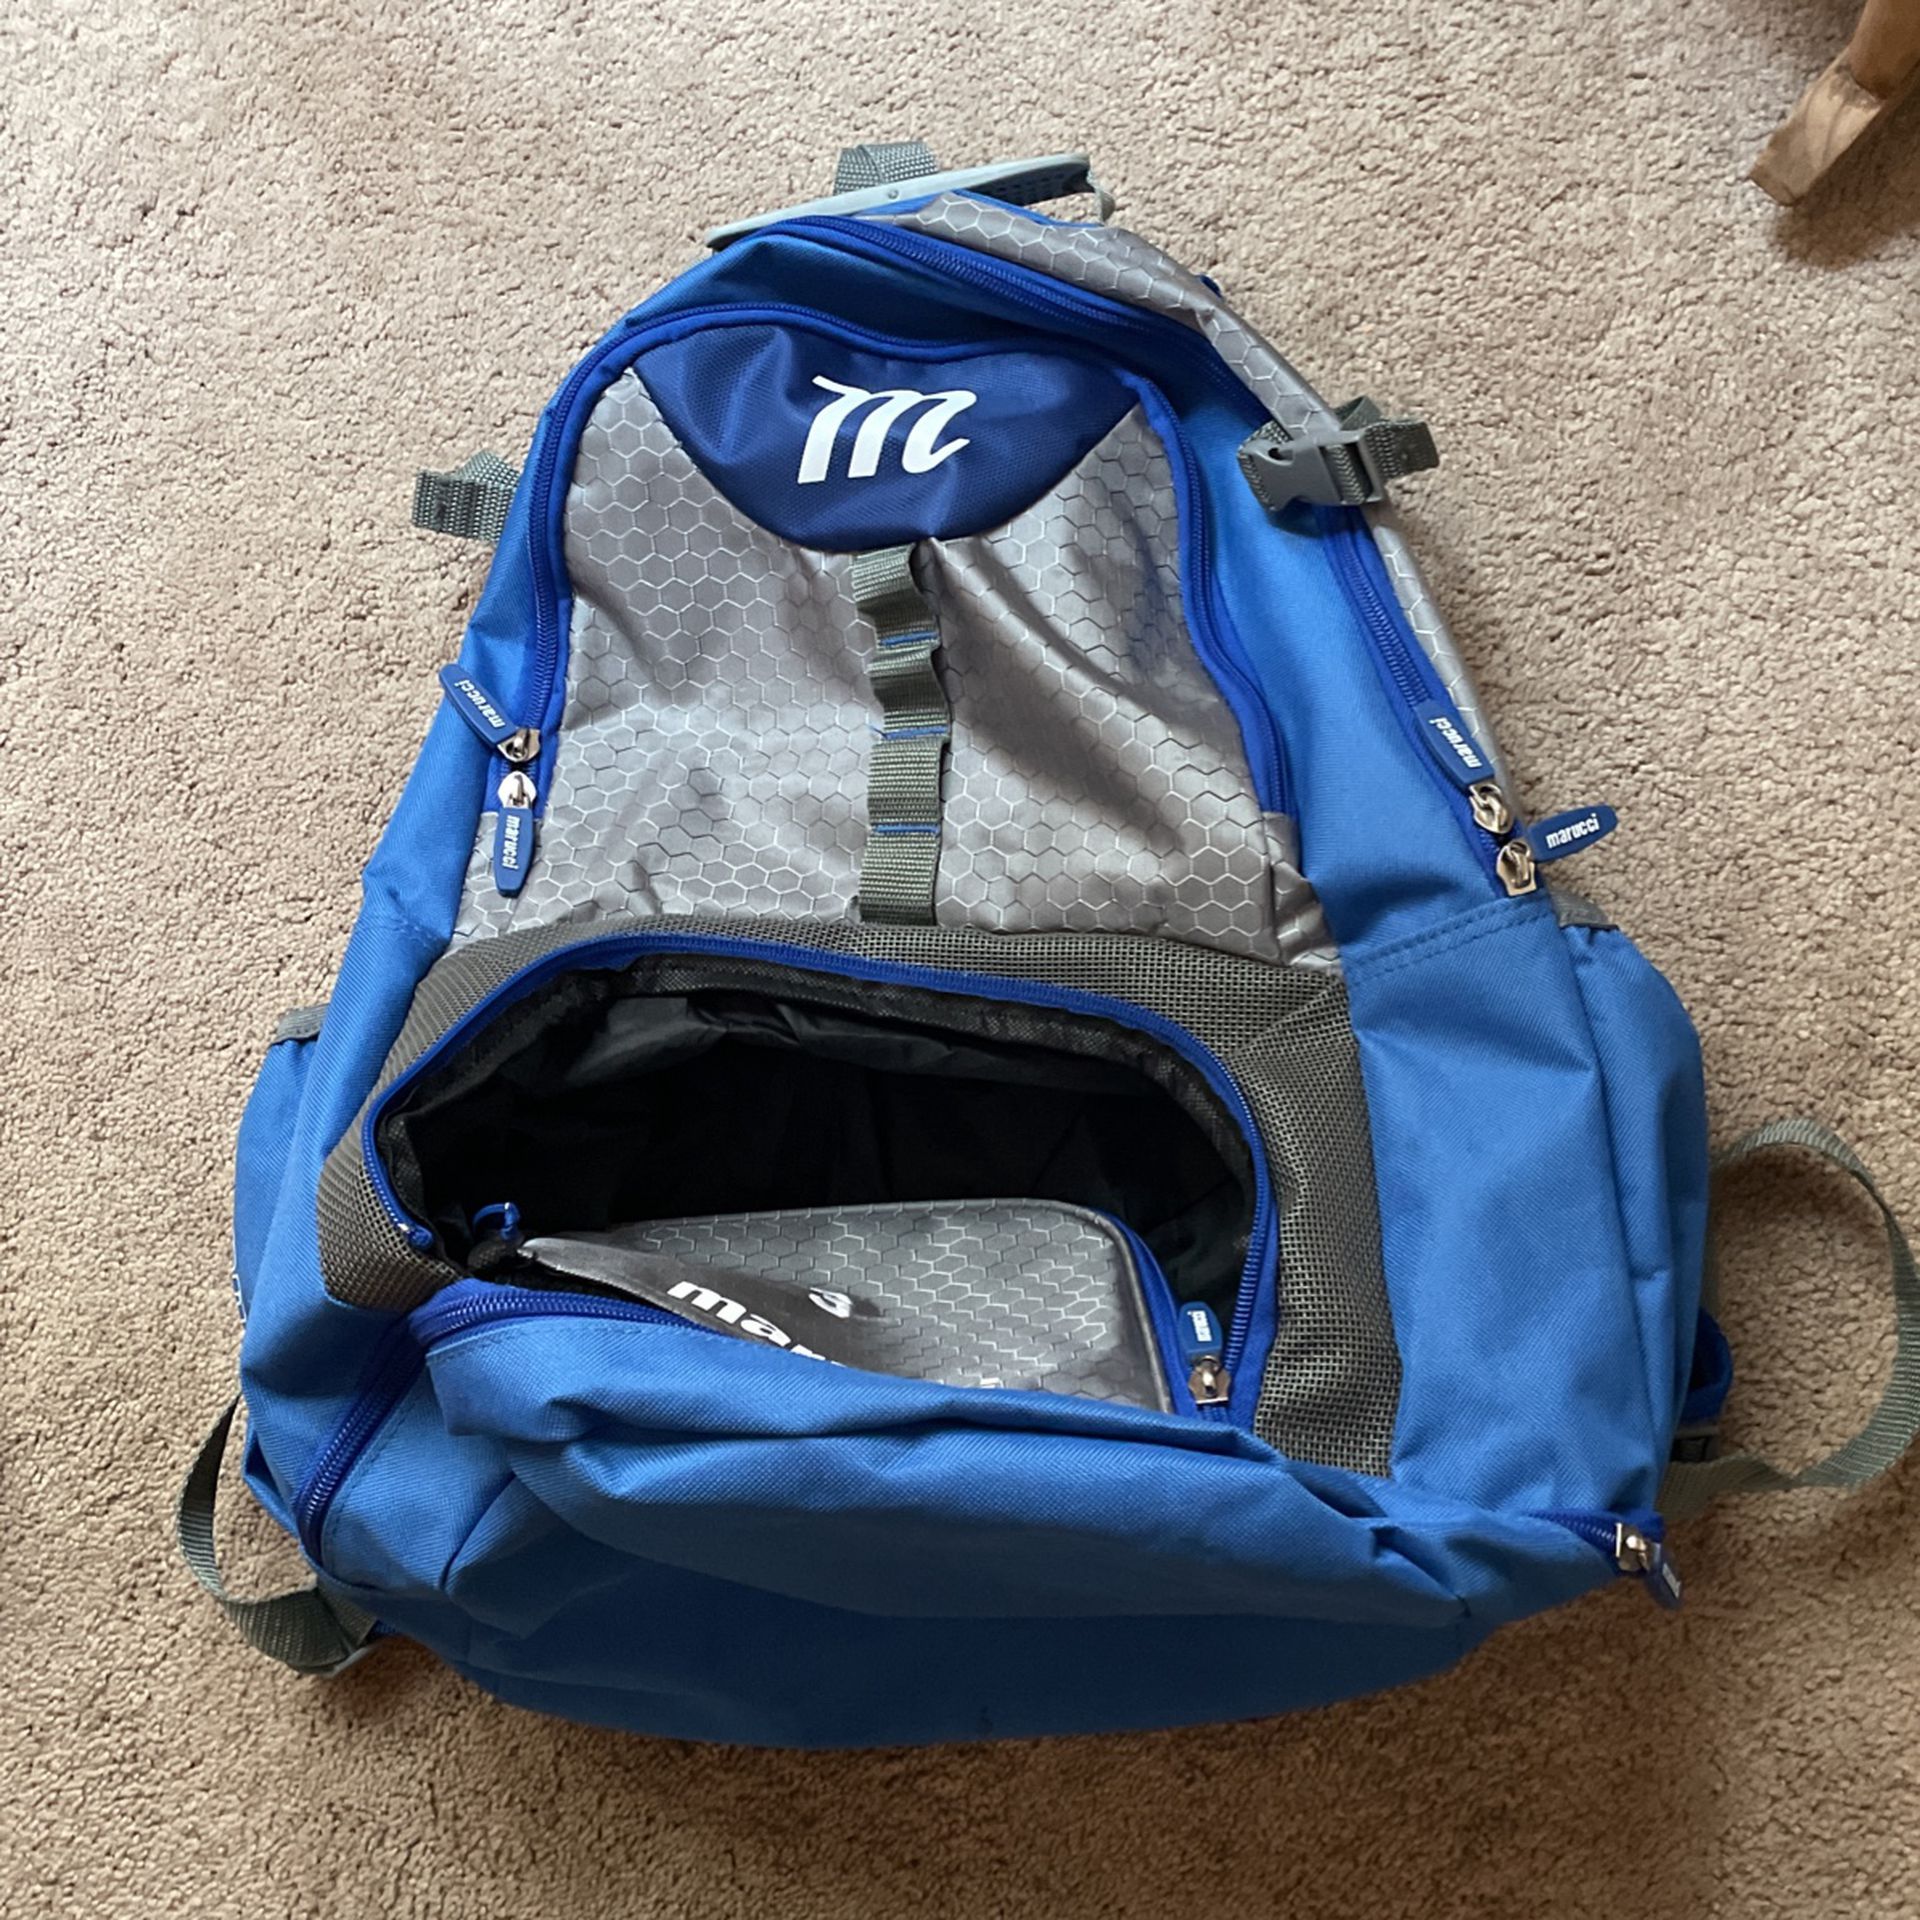 Marucci baseball backpack